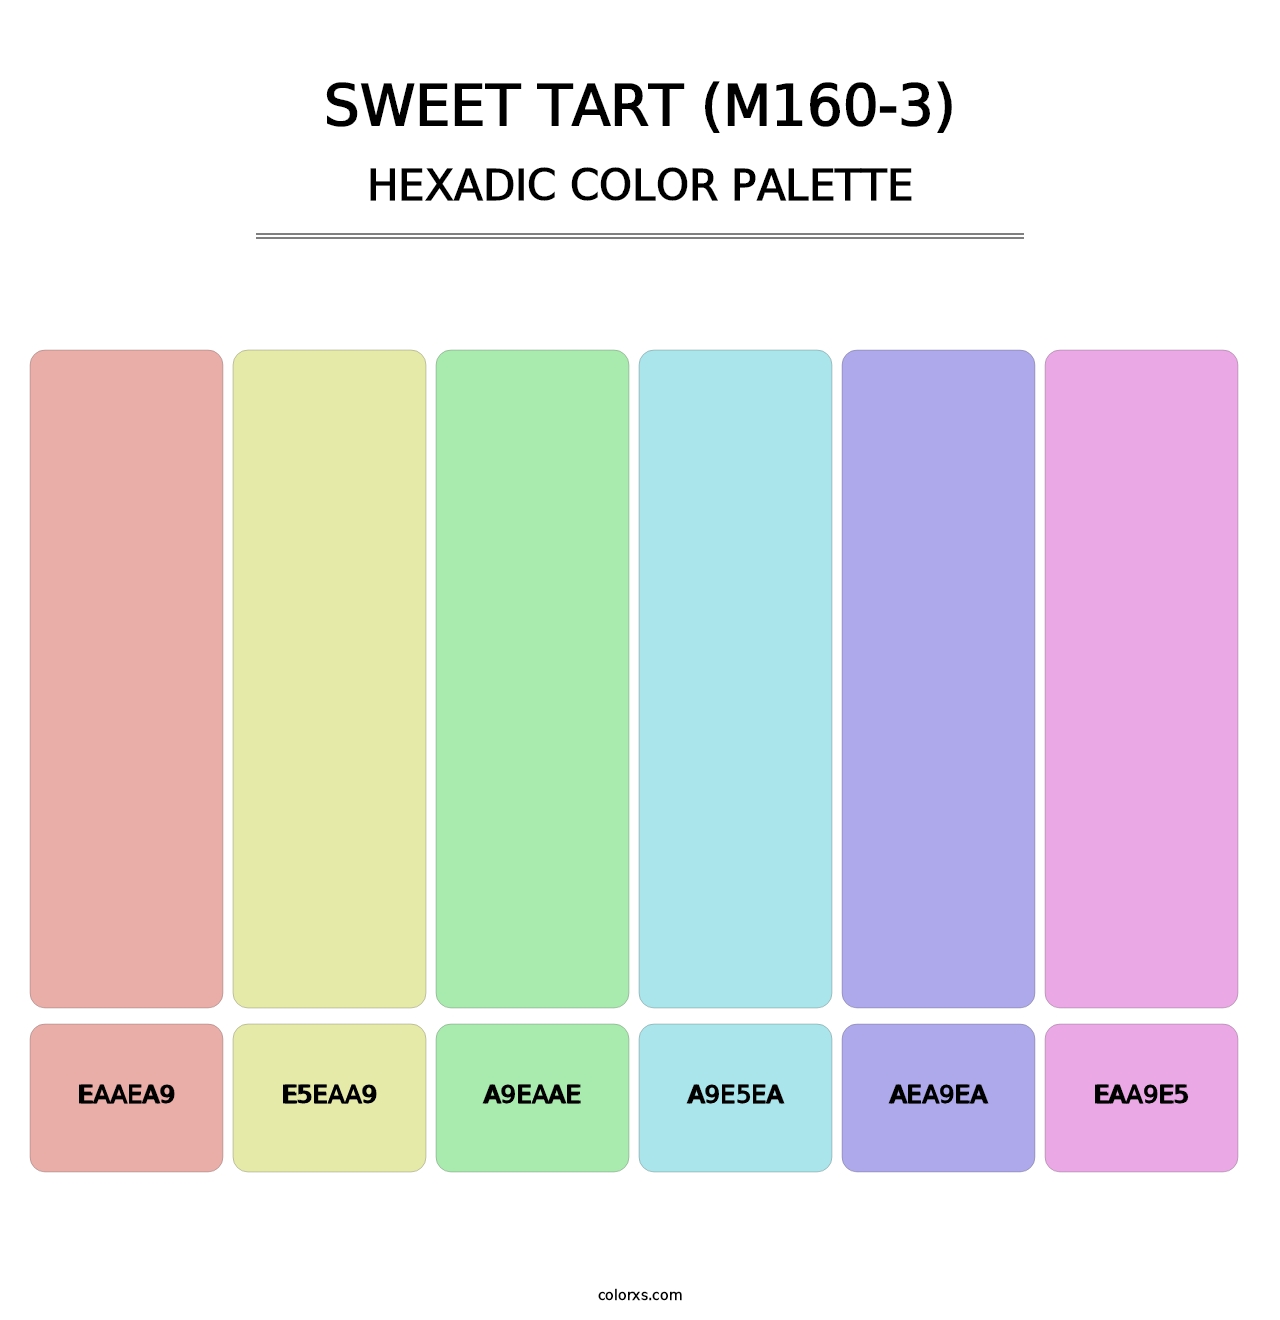 Sweet Tart (M160-3) - Hexadic Color Palette